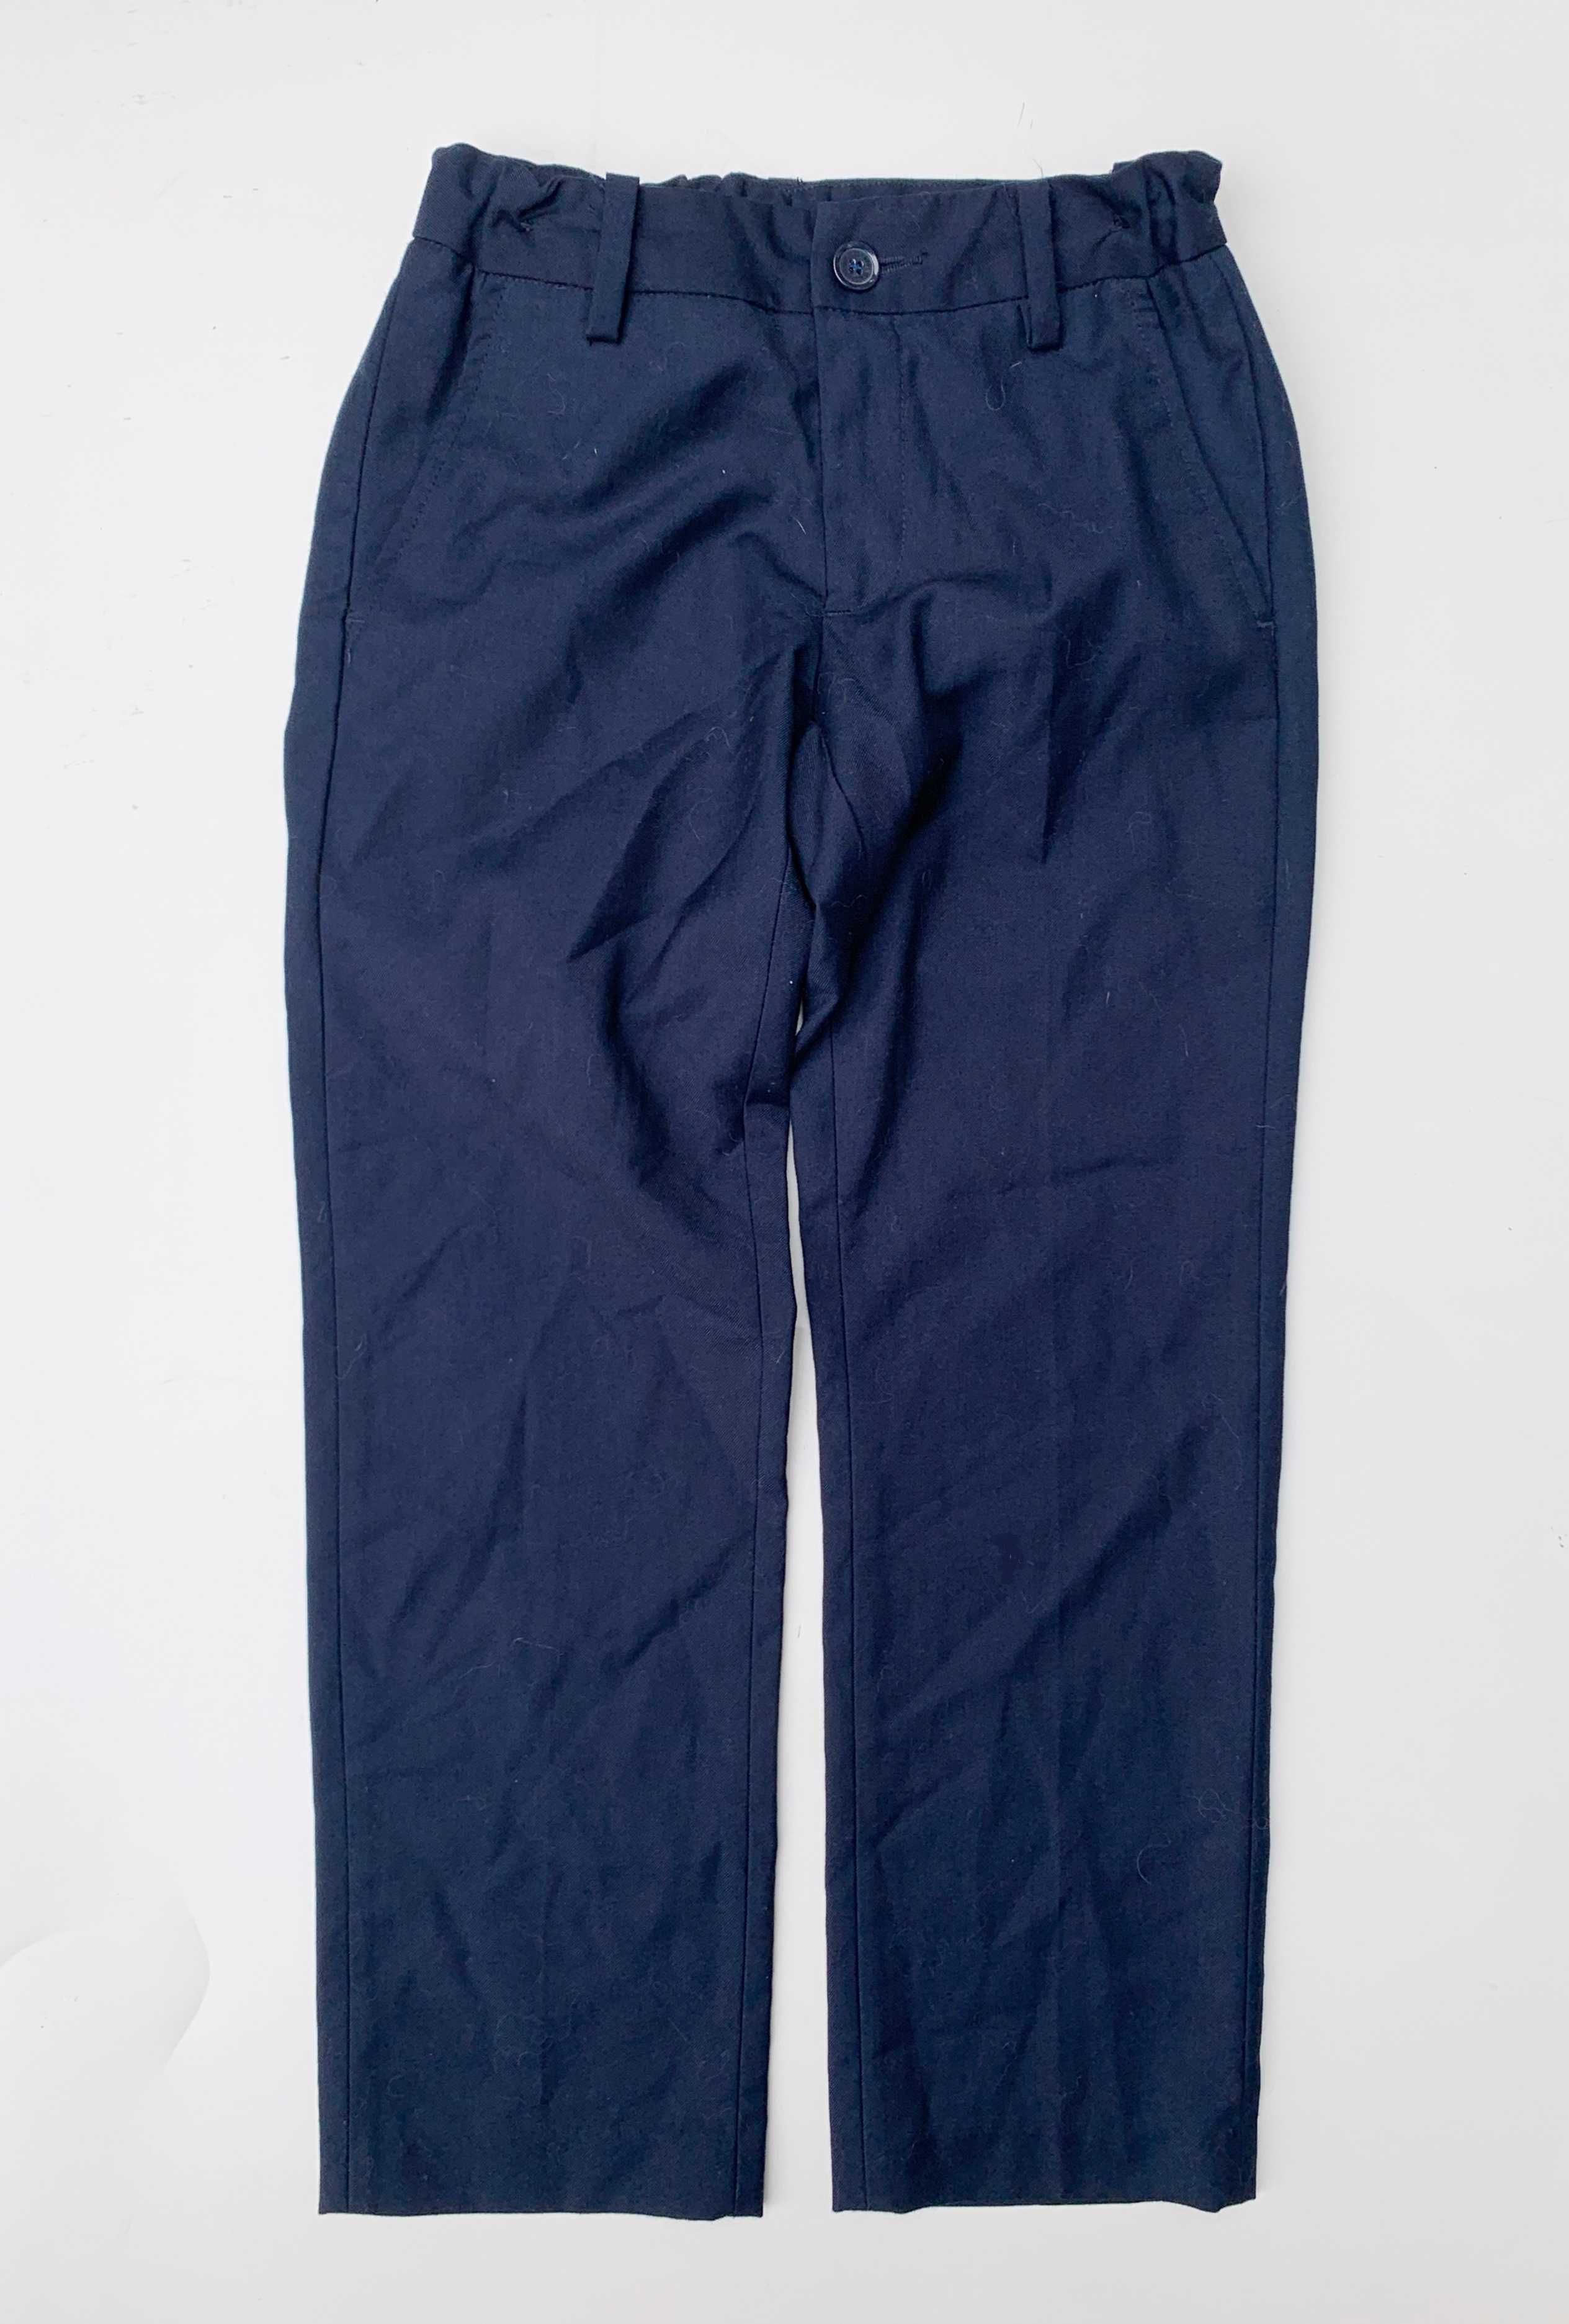 Spodnie Granatowe Lindex 128 cm 7 8 lat Eleganckie Wizytowe